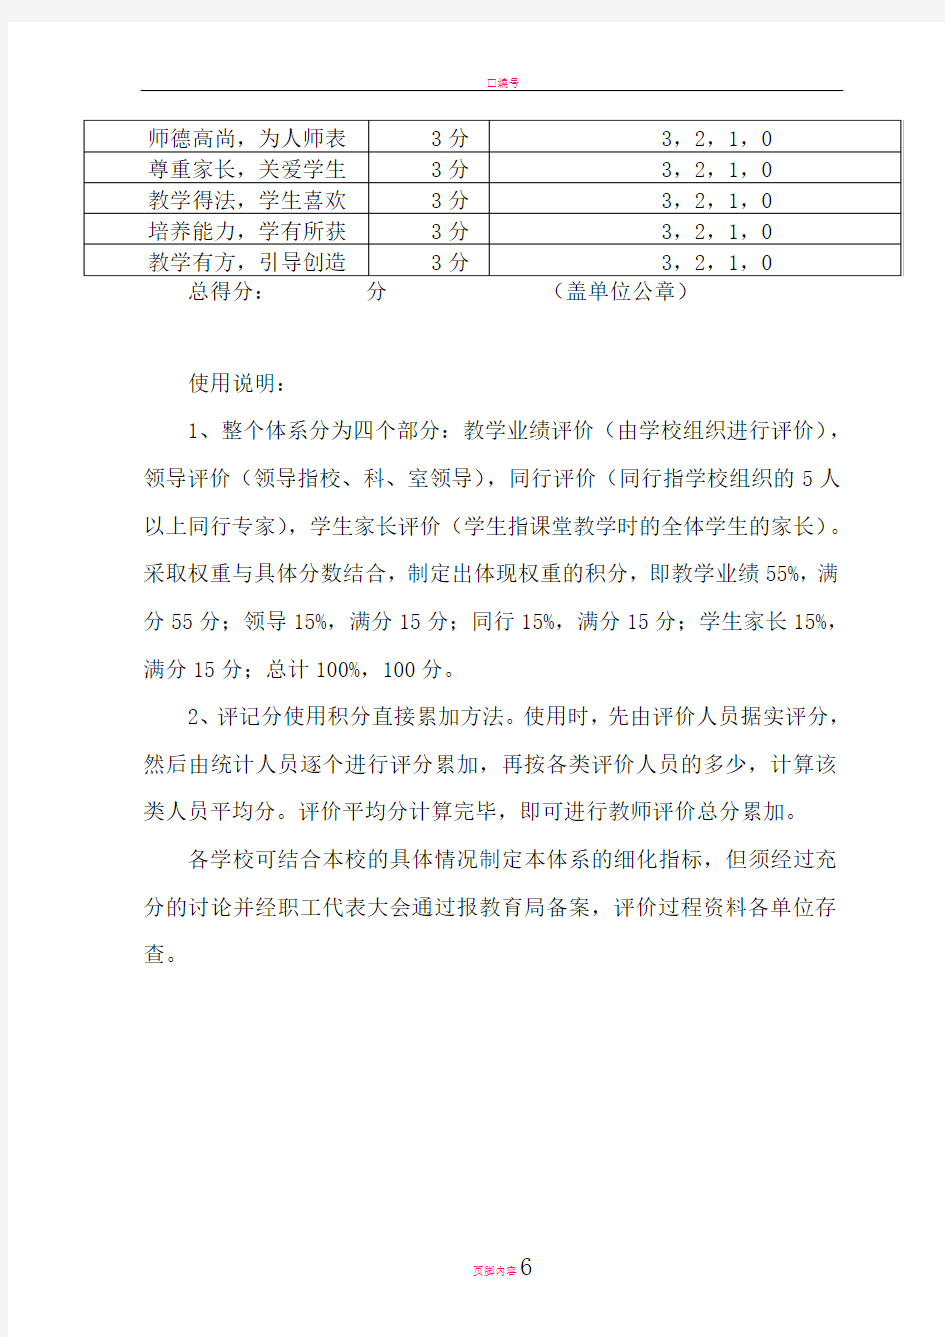 贵州省小学教师教学质量评估指标体系表